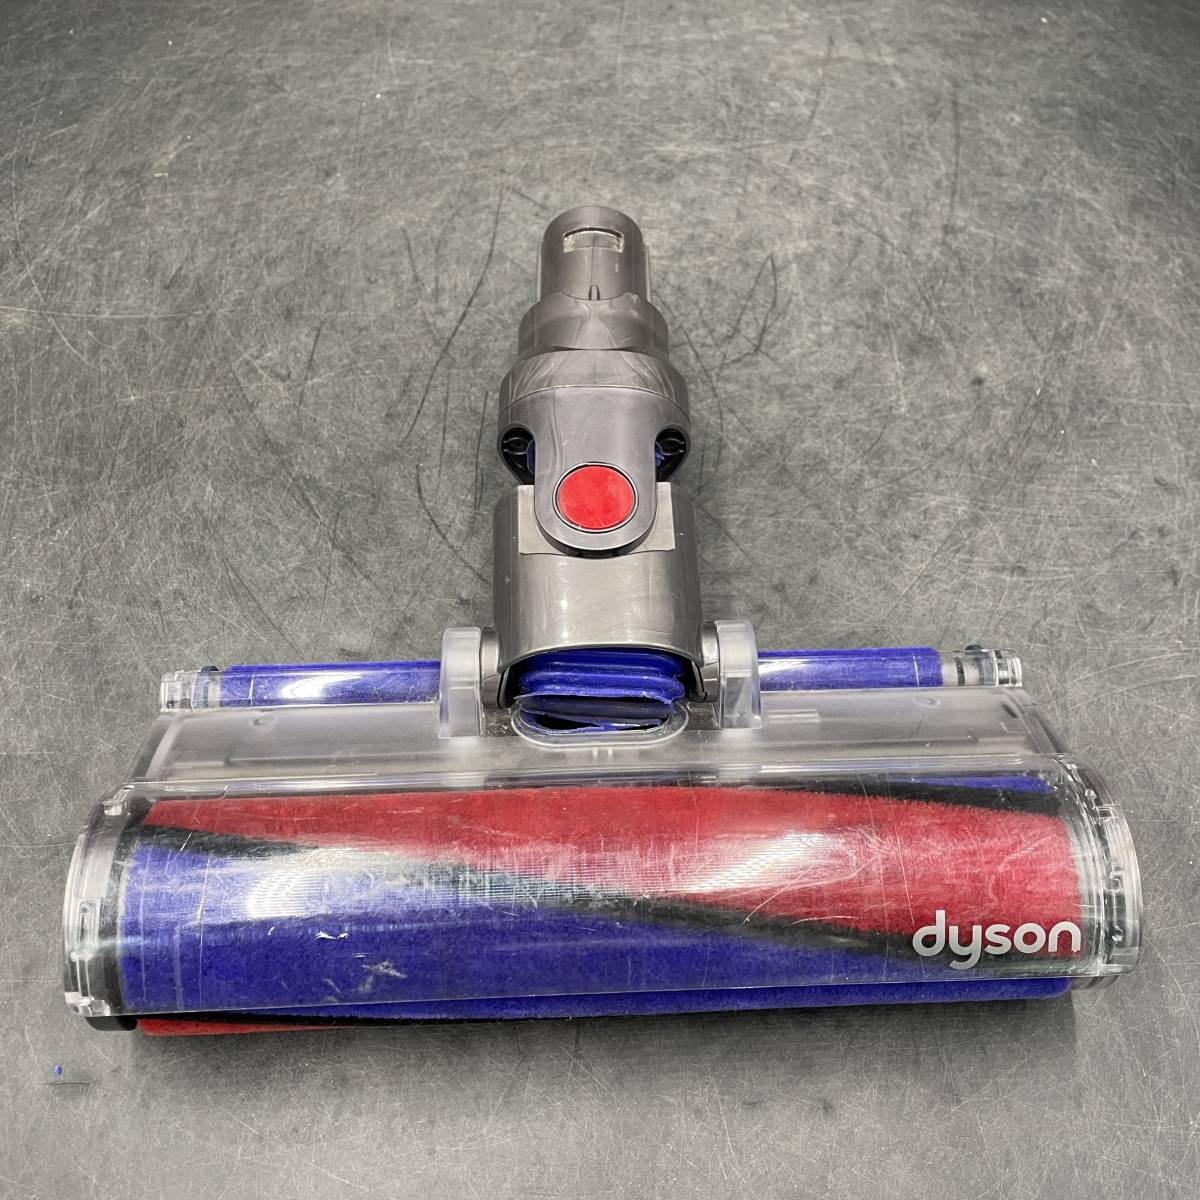 dyson/ダイソン モーター ヘッド ダイレクト ドライブ クリーナー ジャンク 3 【207328-01/02】の画像6